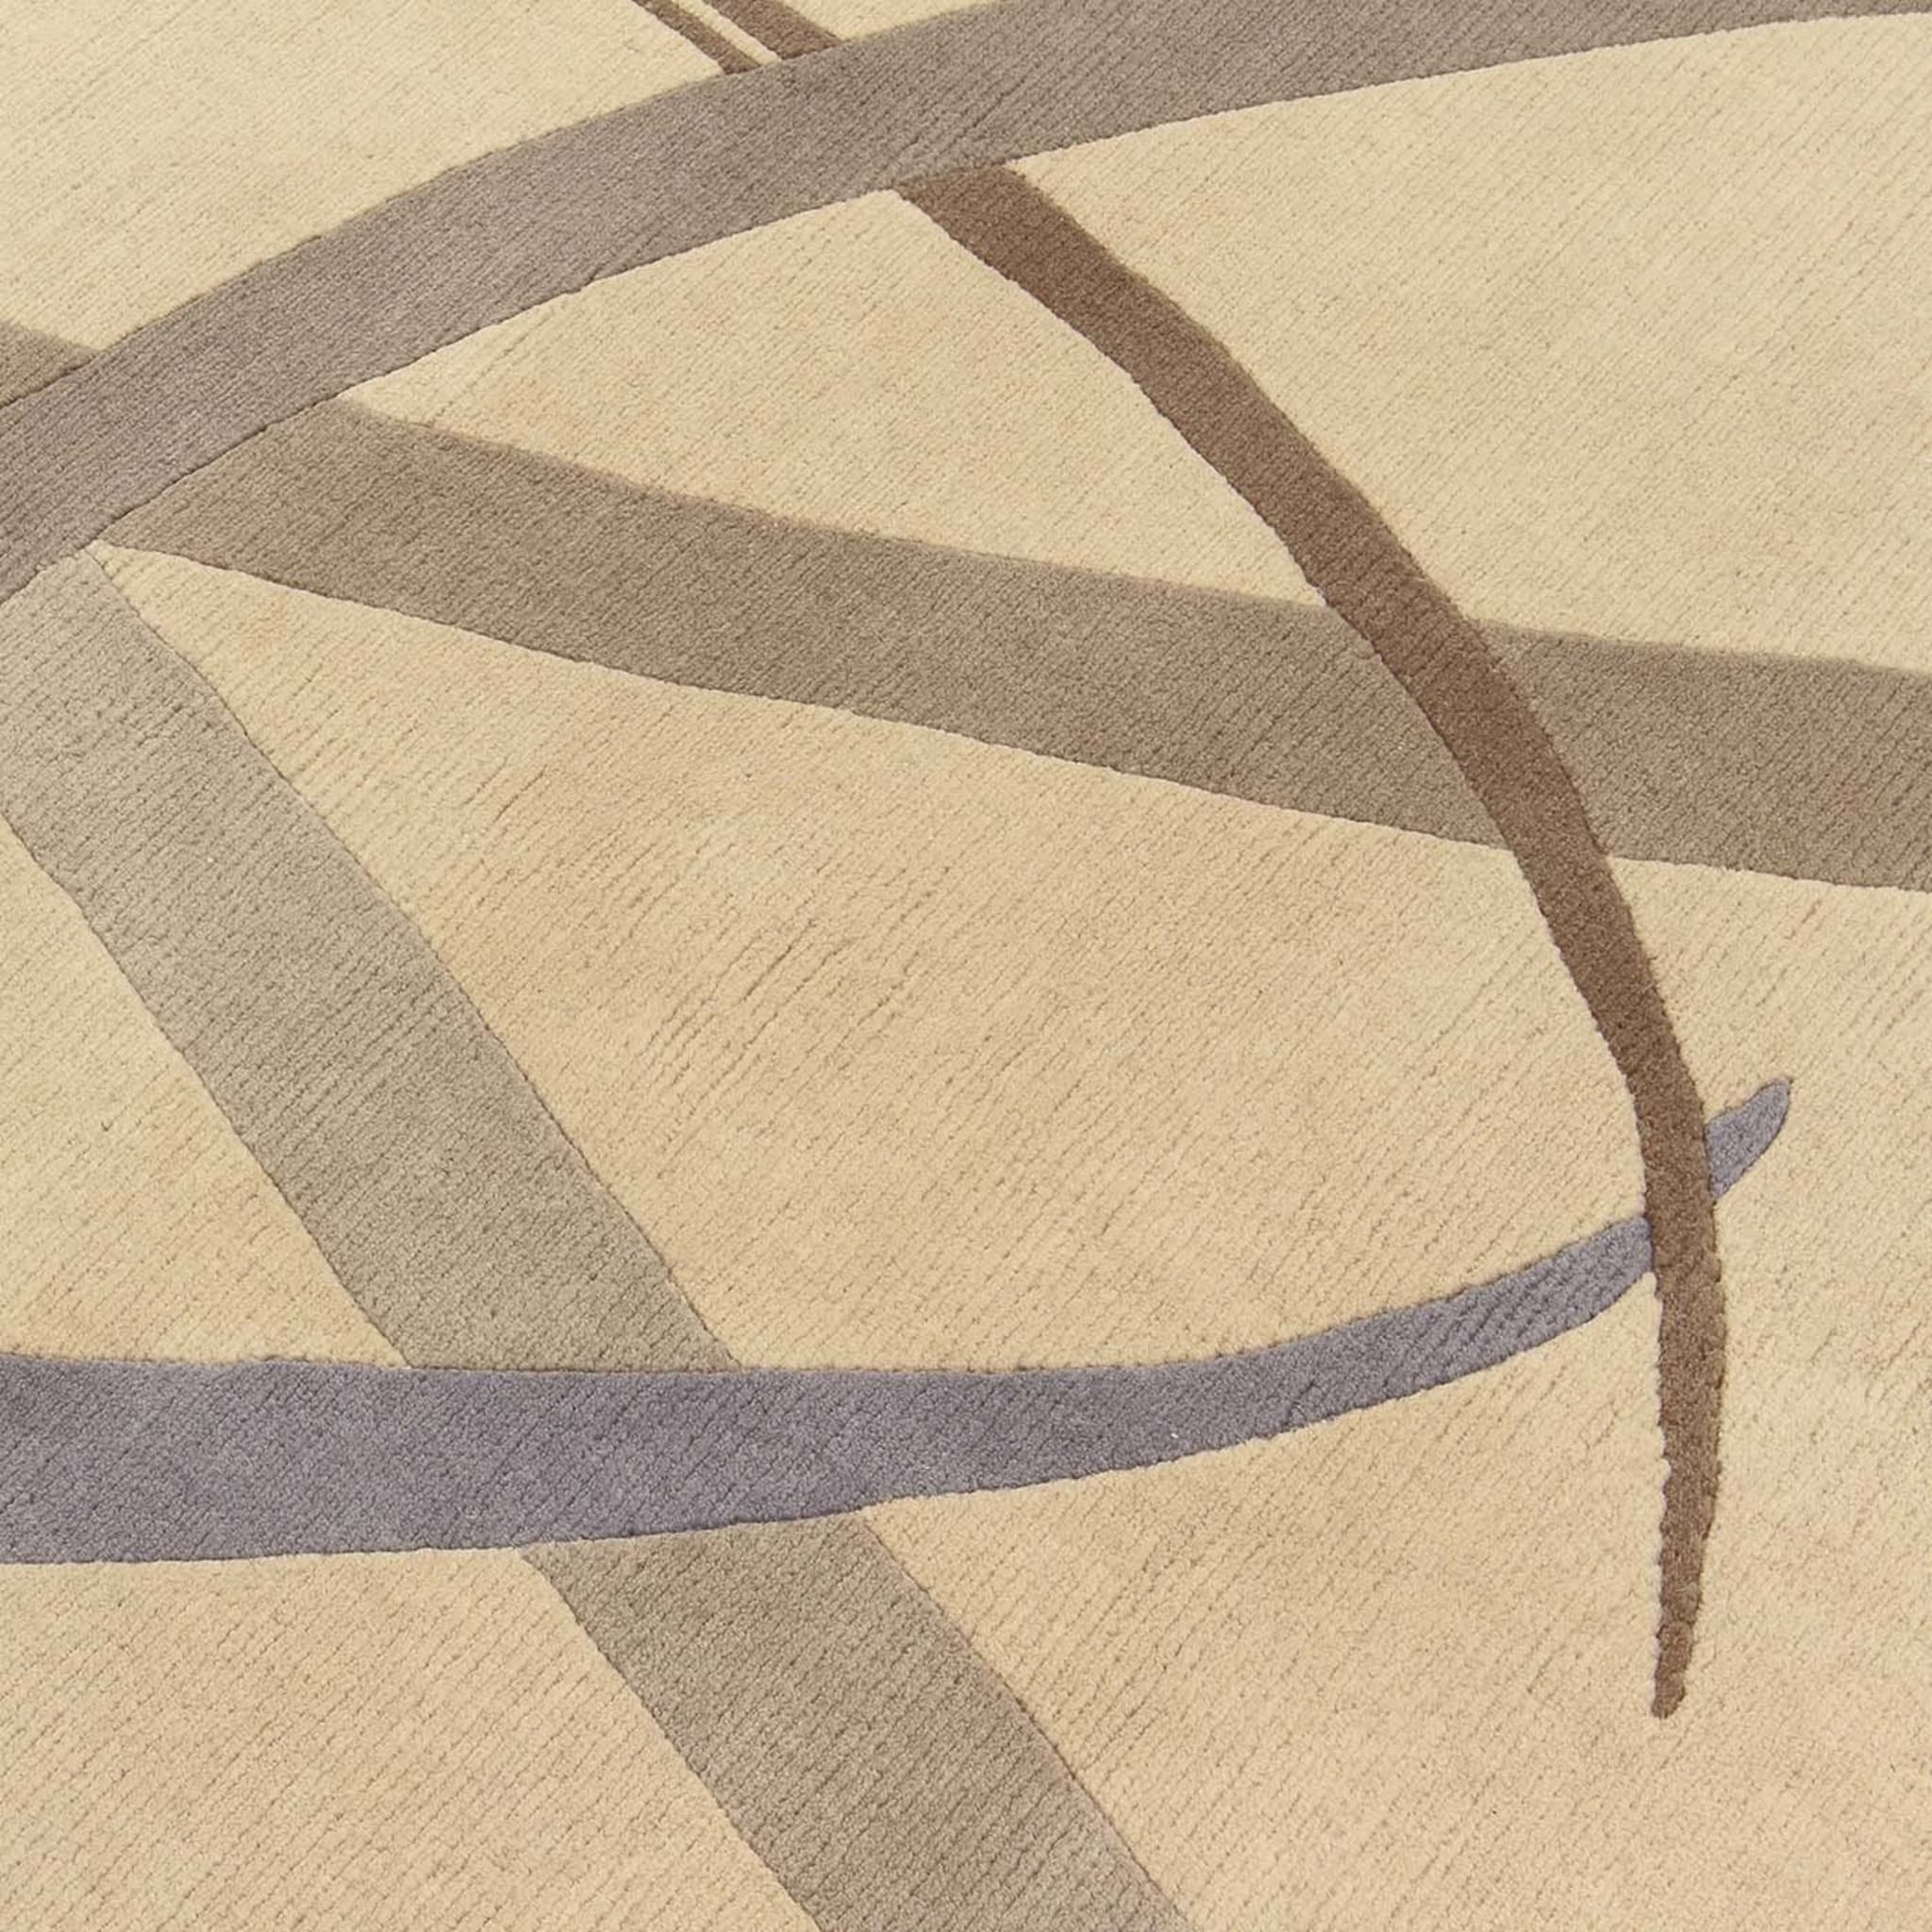 Lettera Disegnata Gray Carpet by Gio Ponti - Alternative view 1